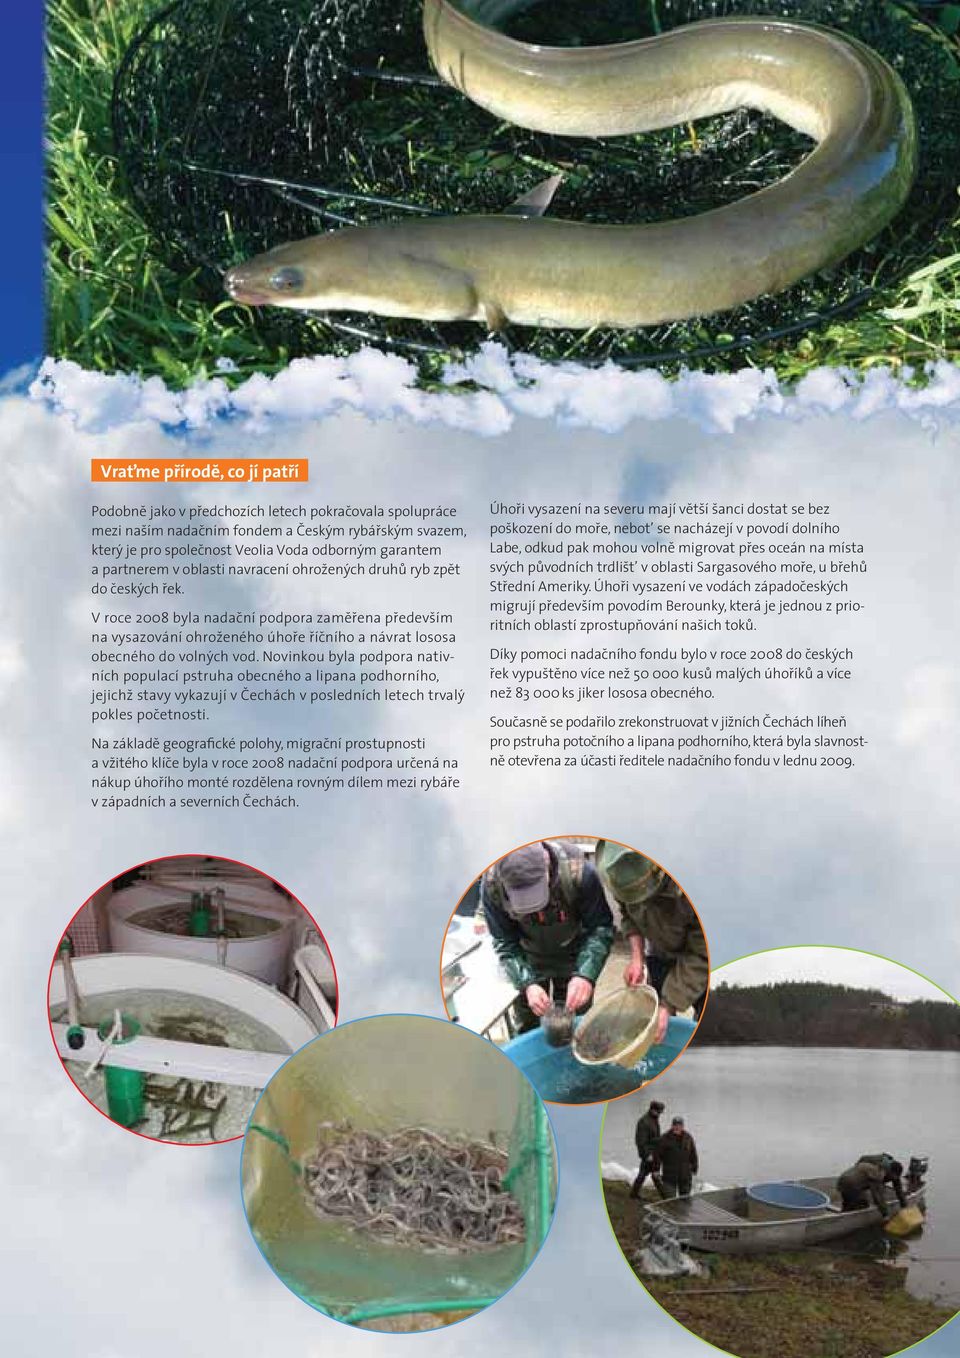 V roce 2008 byla nadační podpora zaměřena především na vysazování ohroženého úhoře říčního a návrat lososa obecného do volných vod.